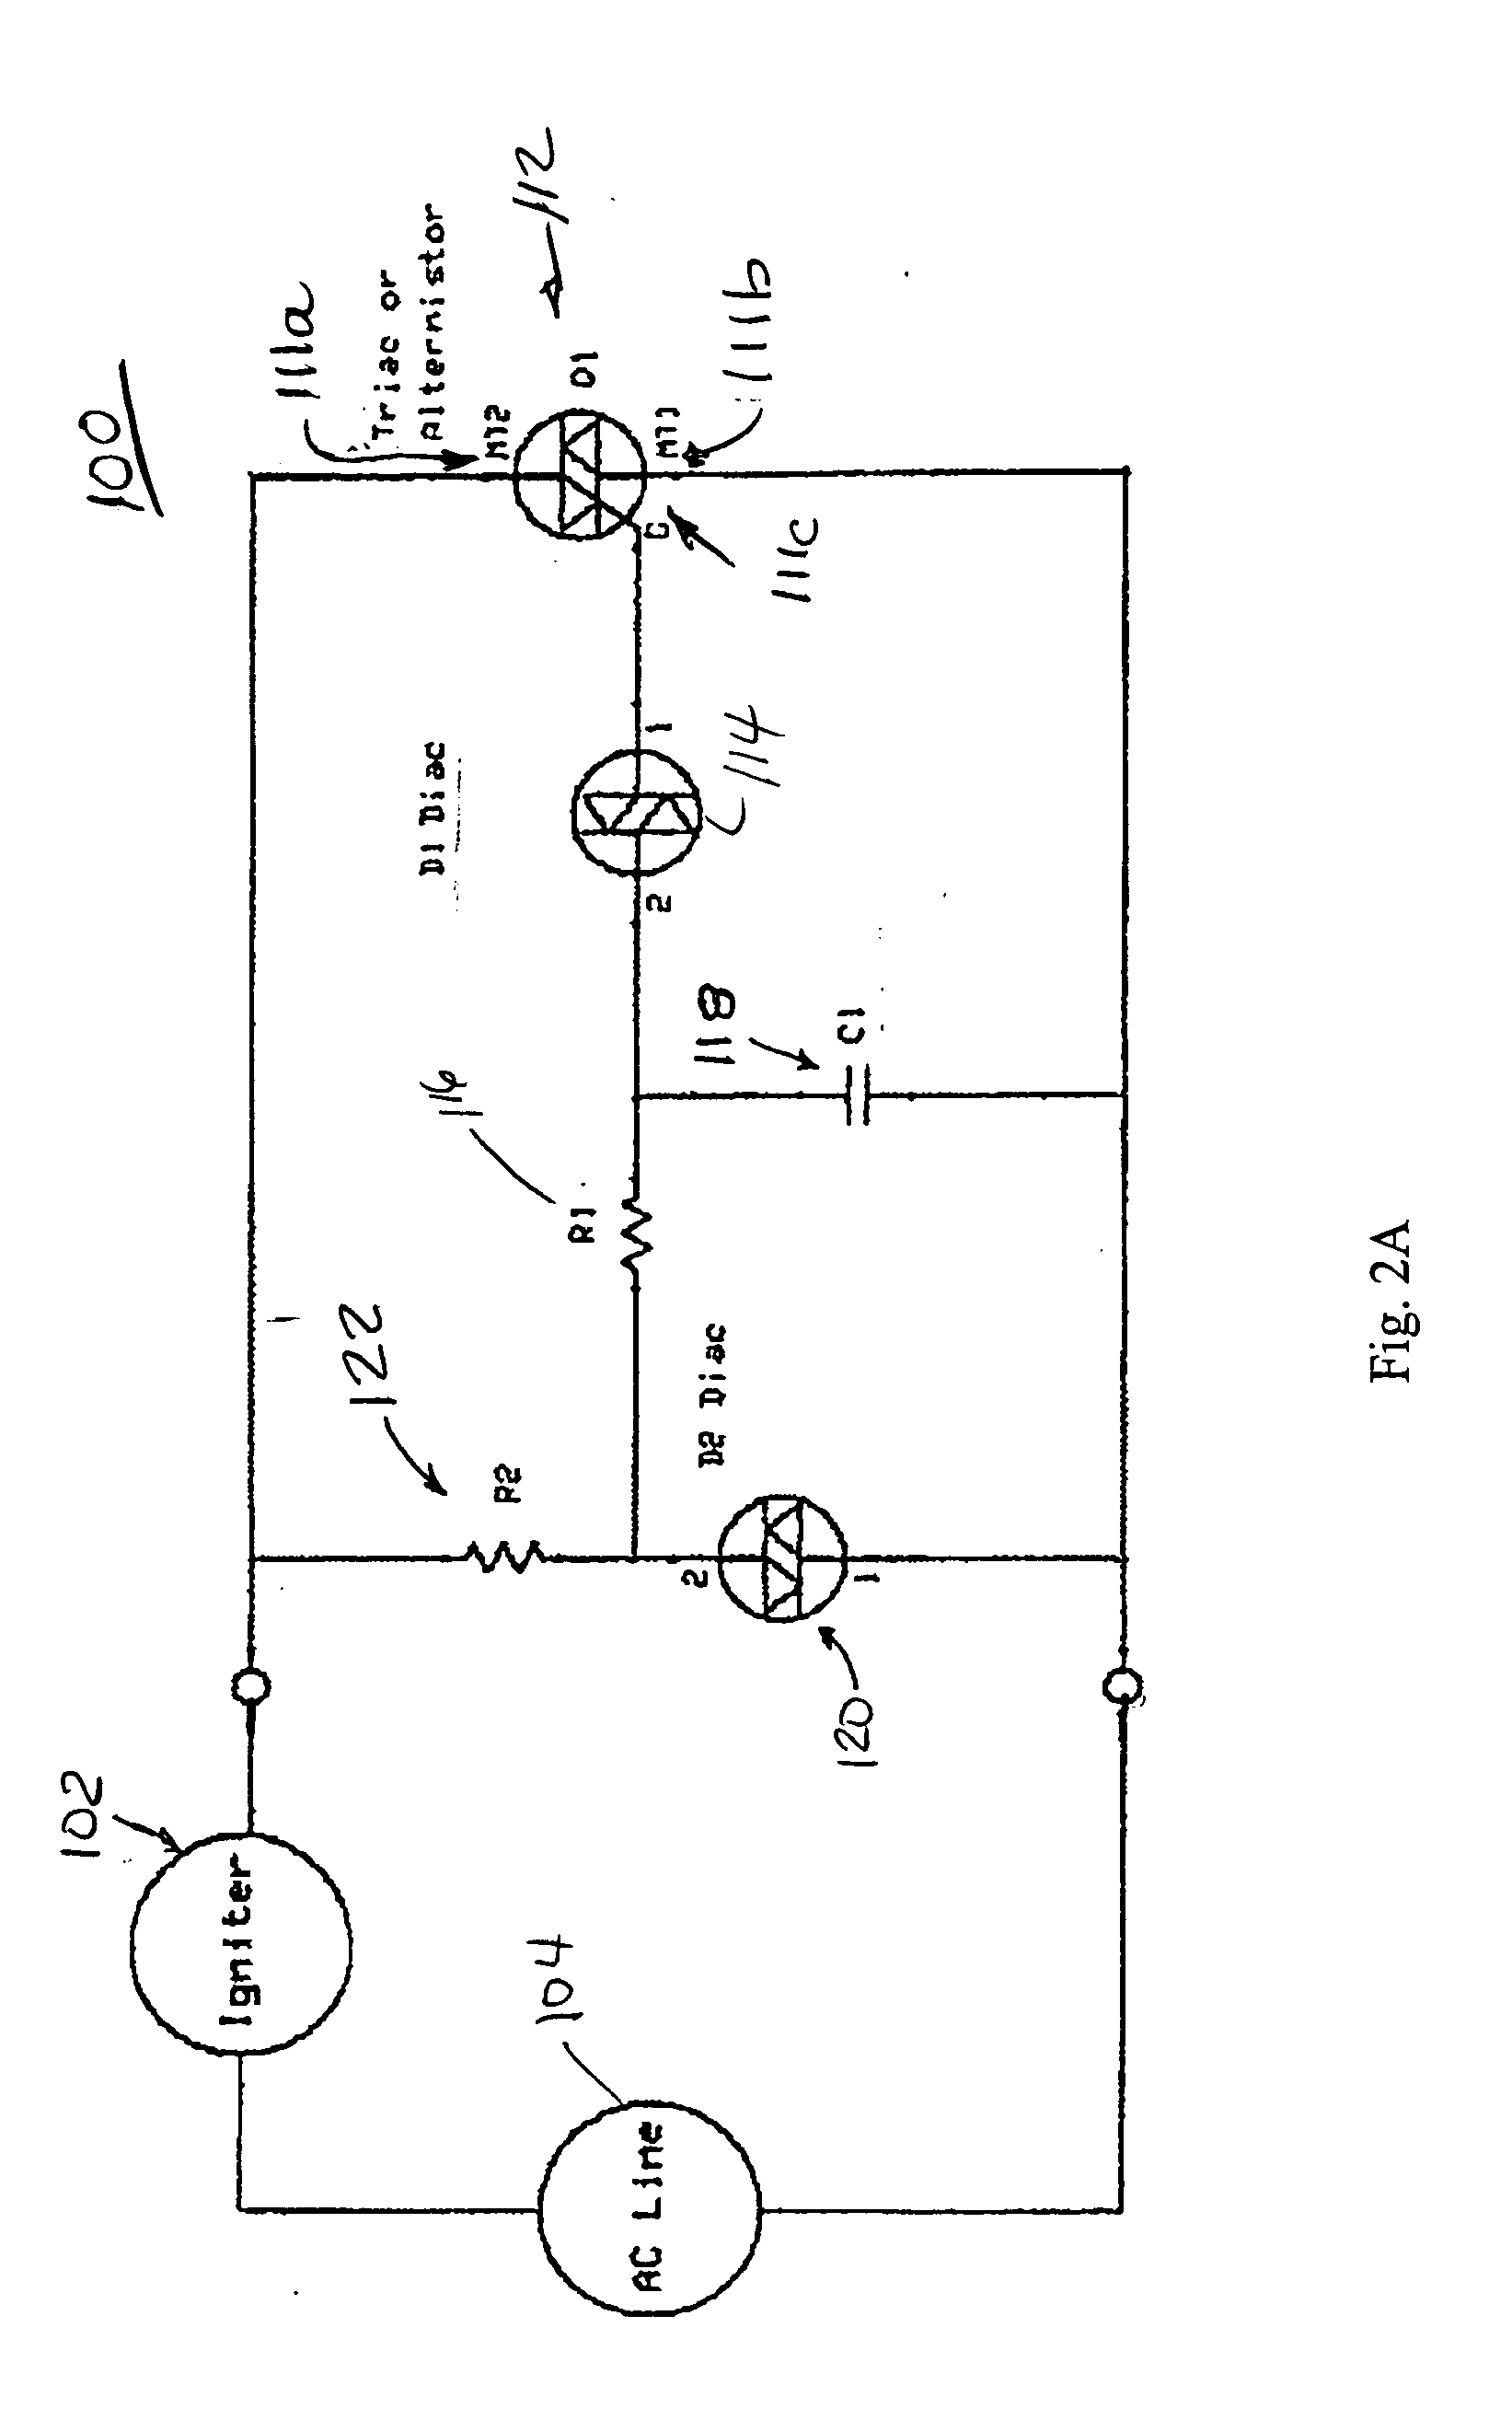 Igniter voltage compensation circuit